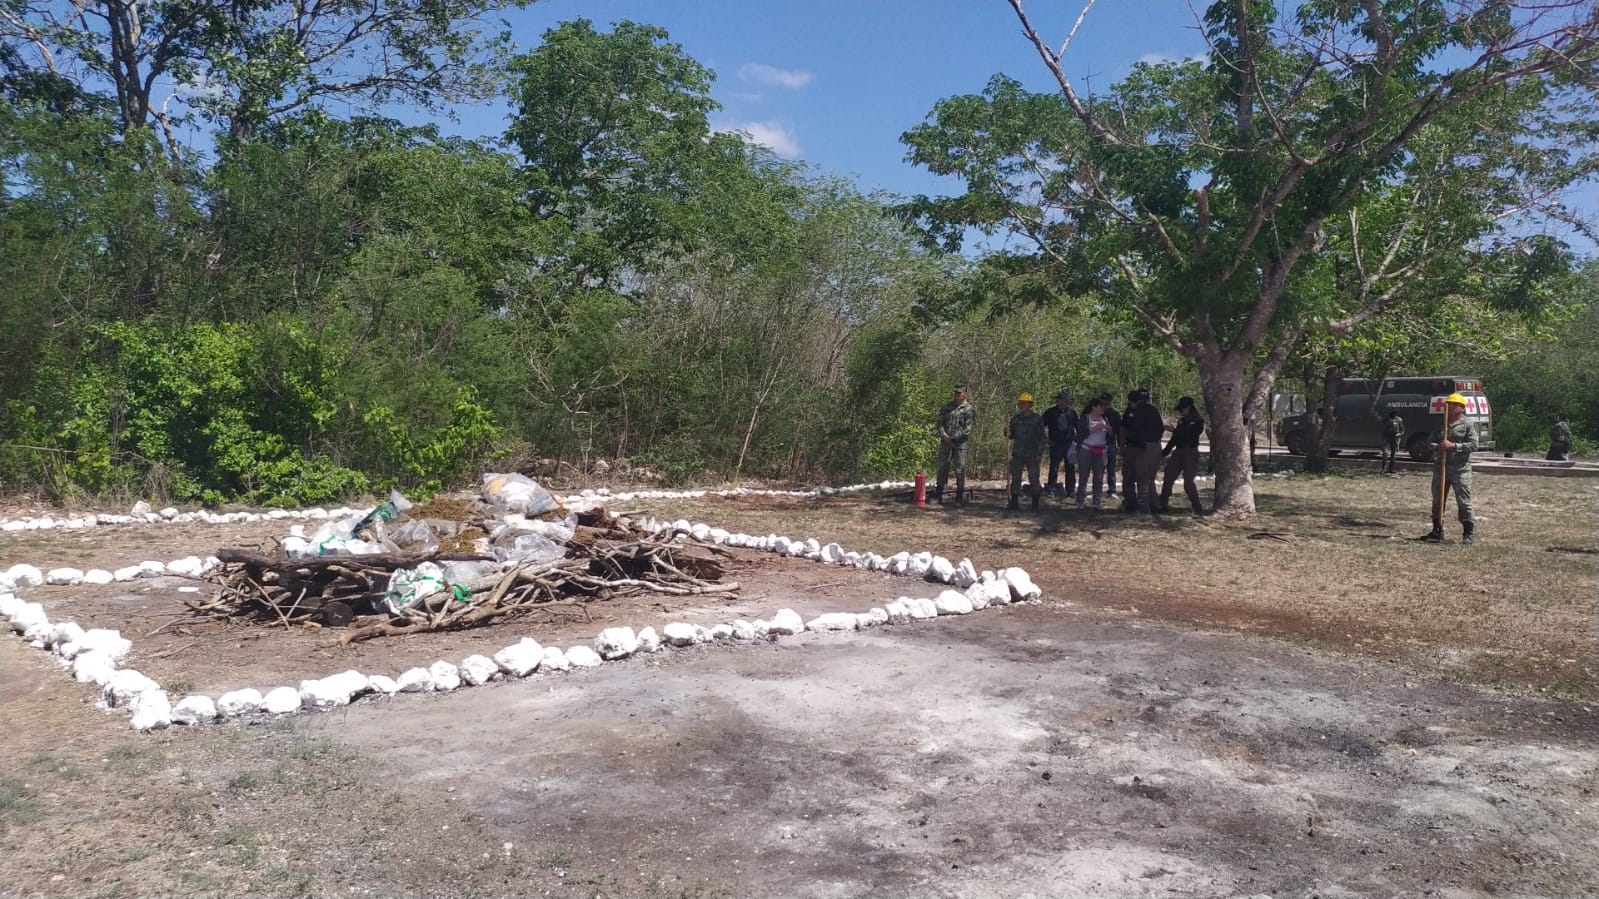 Incineran drogas y objetos ilegales decomisados durante cateos en Yucatán: EN VIVO